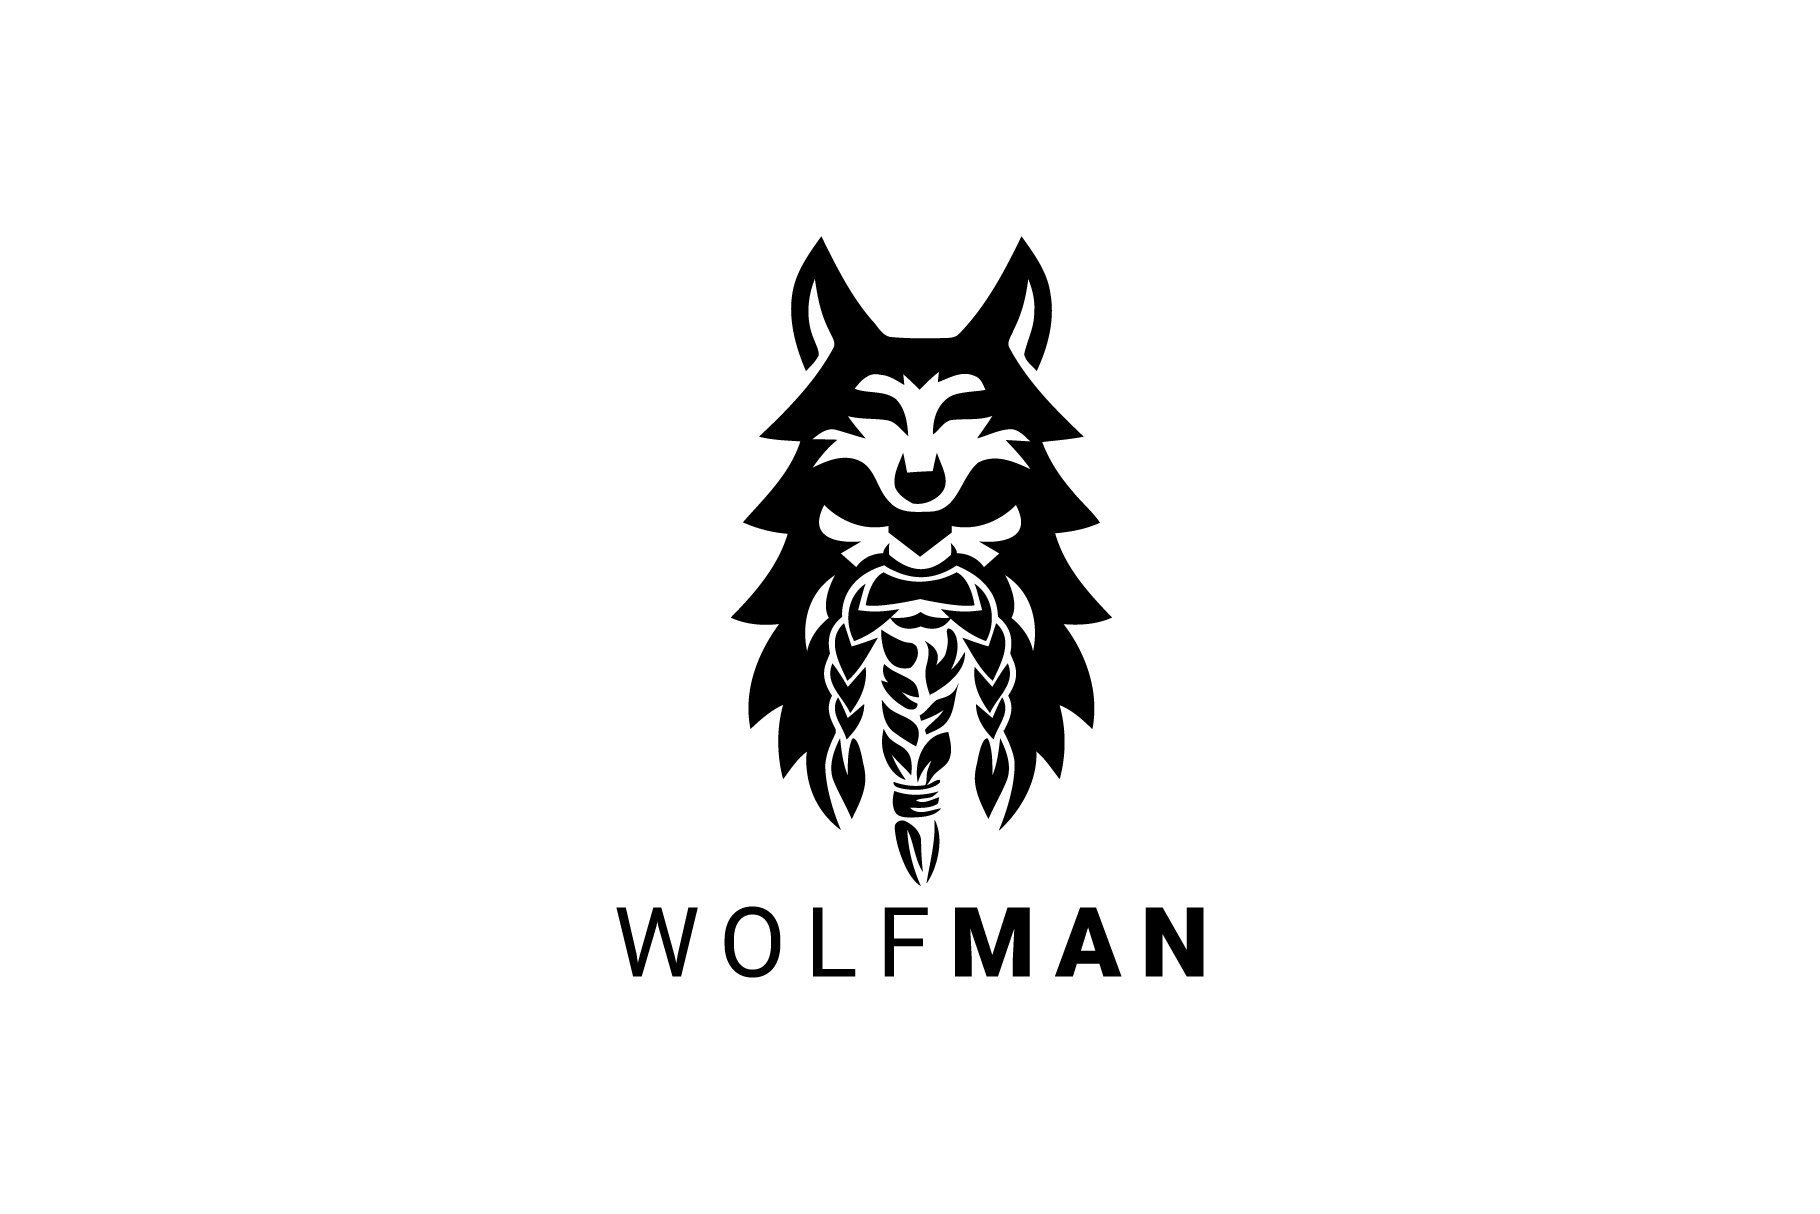 Wolfman Logo cover image.